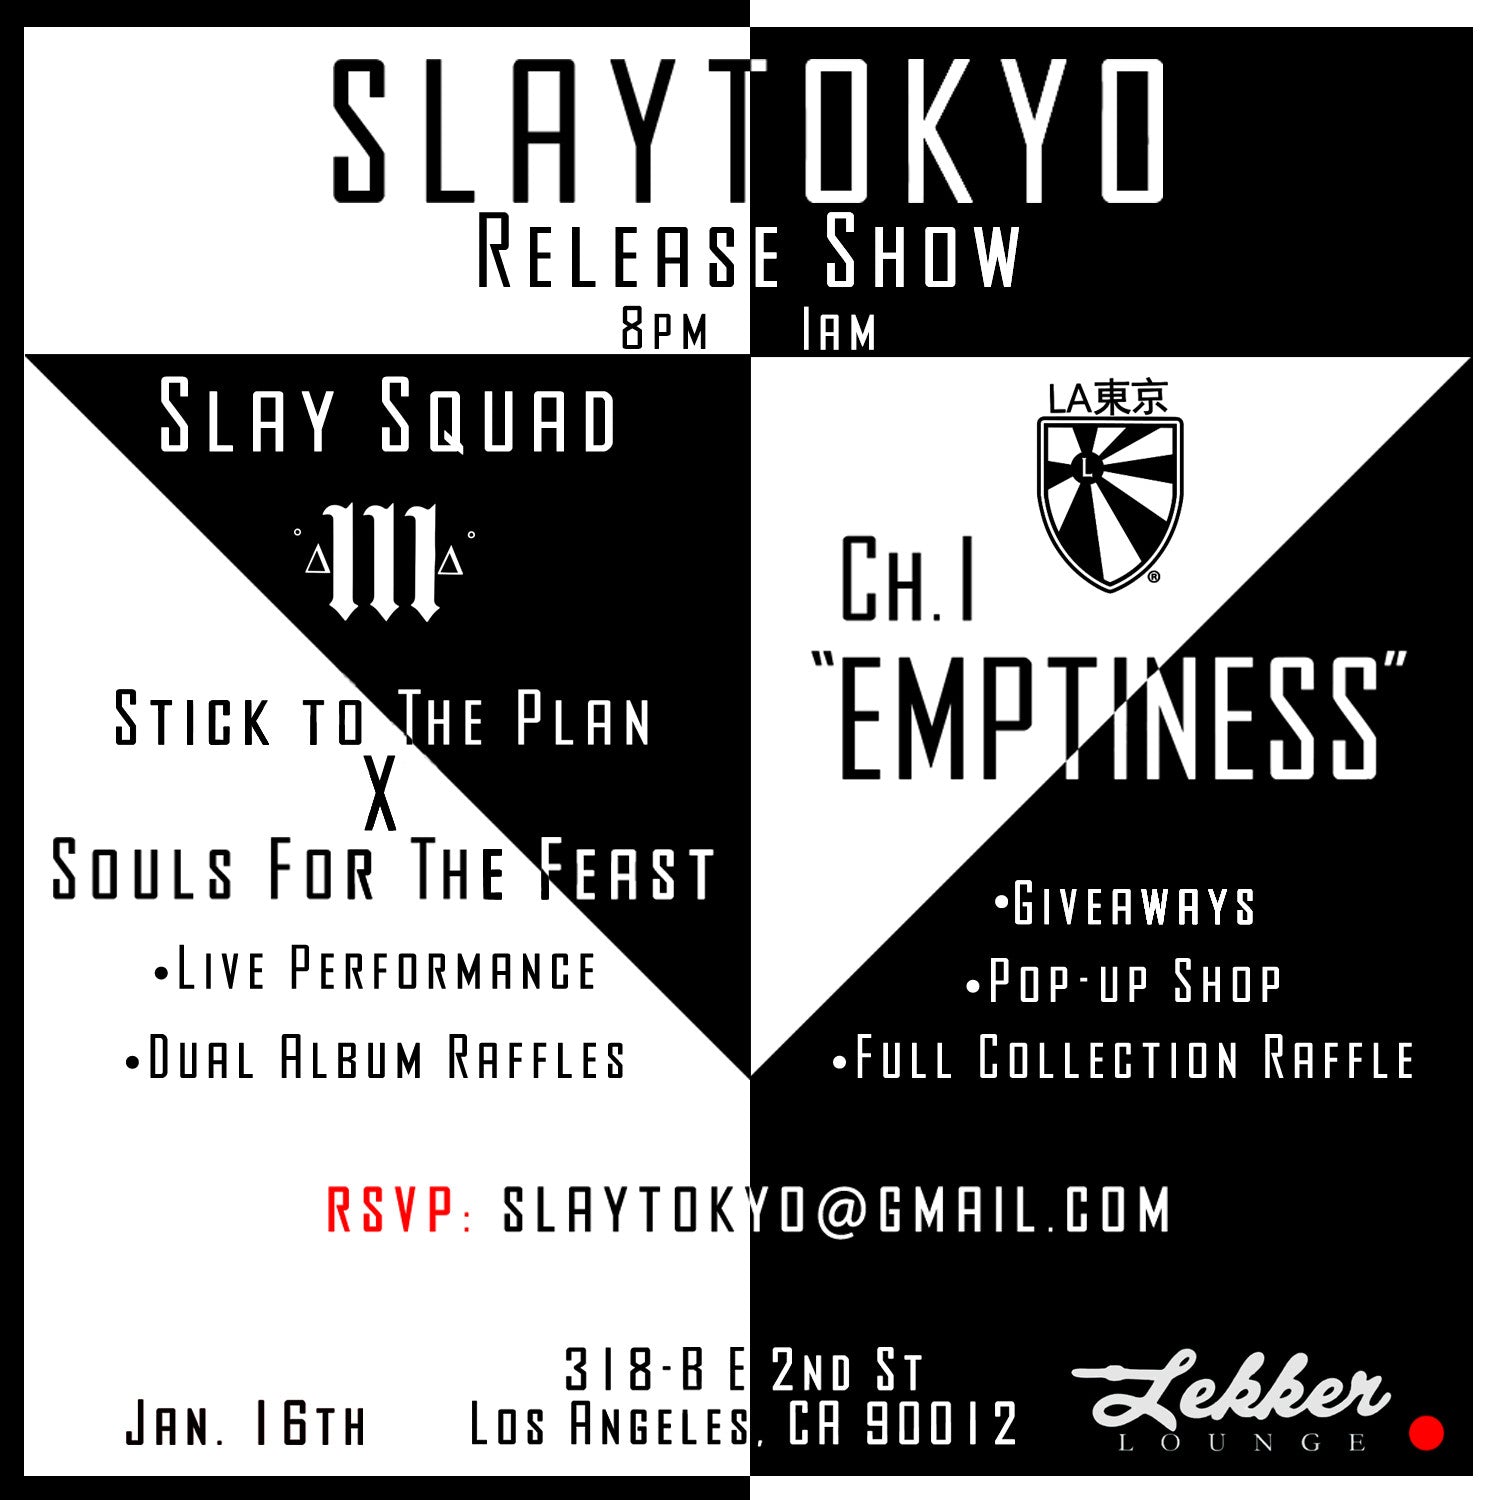 Slaytokyo Release Party